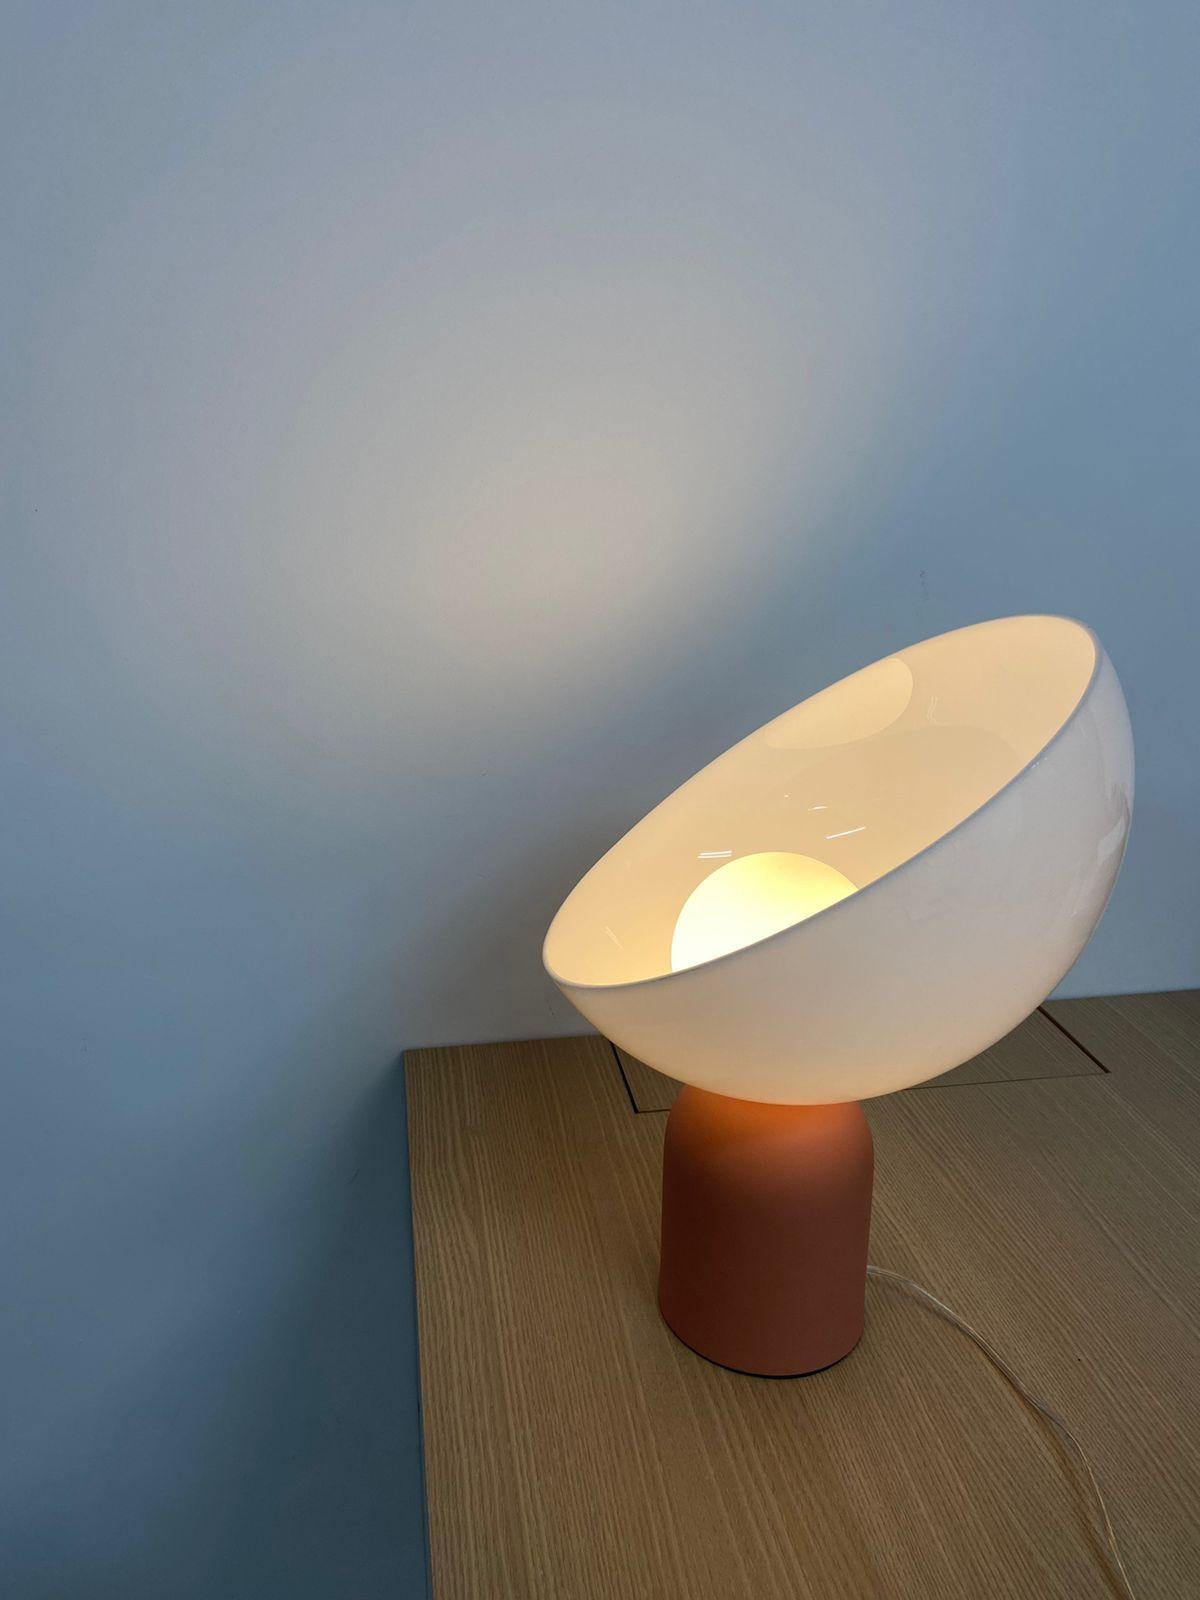 Cette lampe de table s'appelle Lichia. 
Le produit se compose d'un diffuseur acrylique rond et d'une base en aluminium.
La base est en aluminium peint, et peut être dans n'importe quelle couleur de la palette affichée dans les photos (blanc, ivoire,